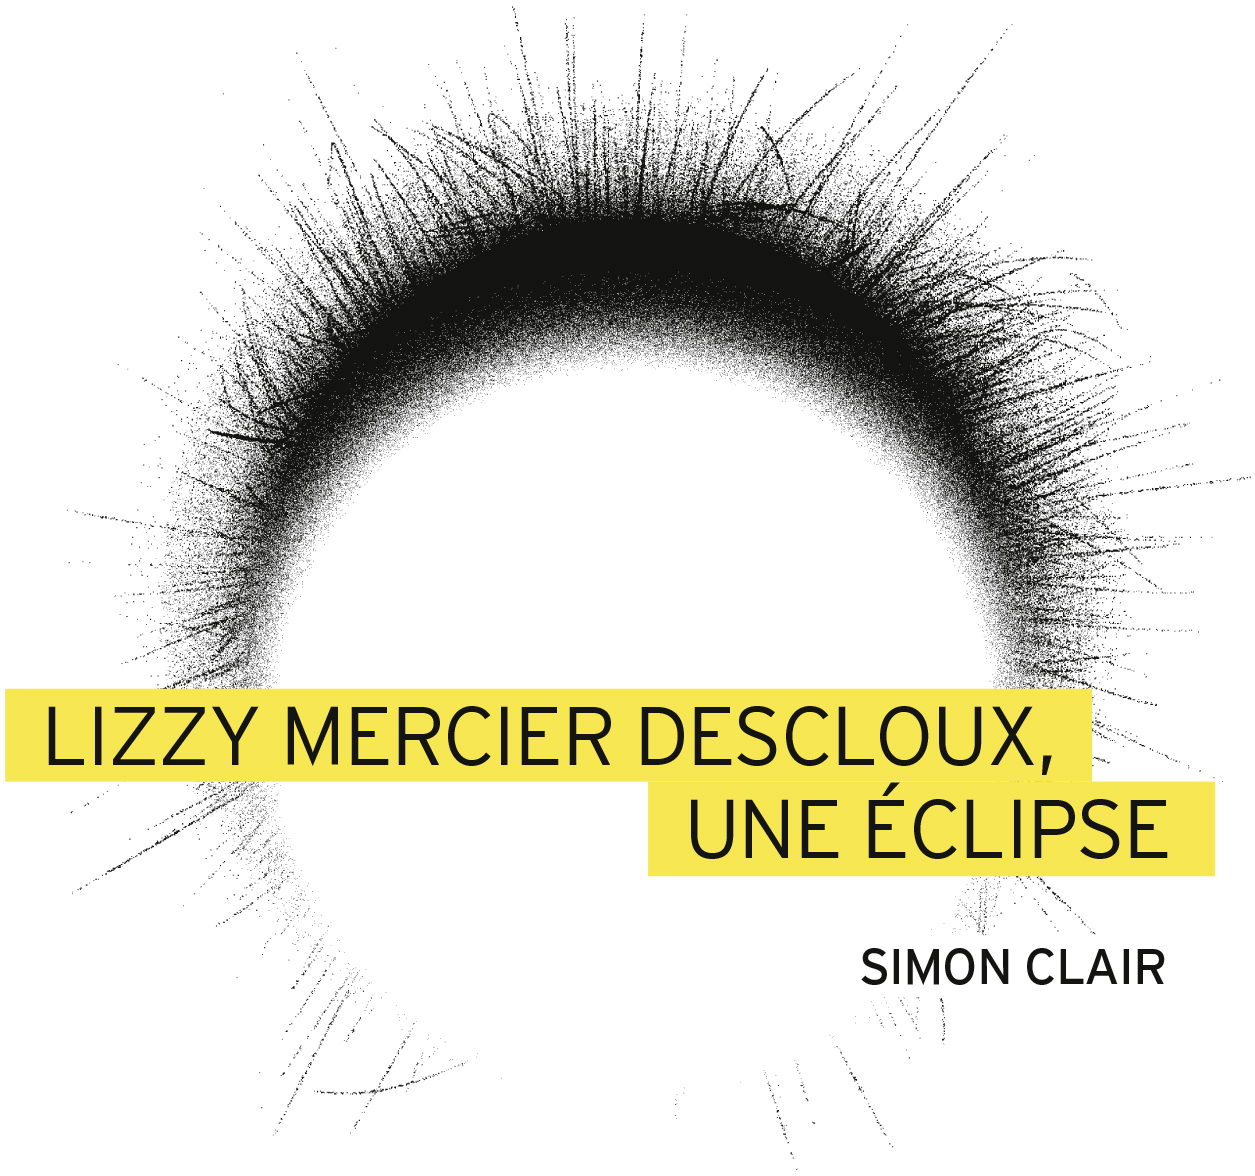 Image Lizzy Mercier Descloux, une éclipse